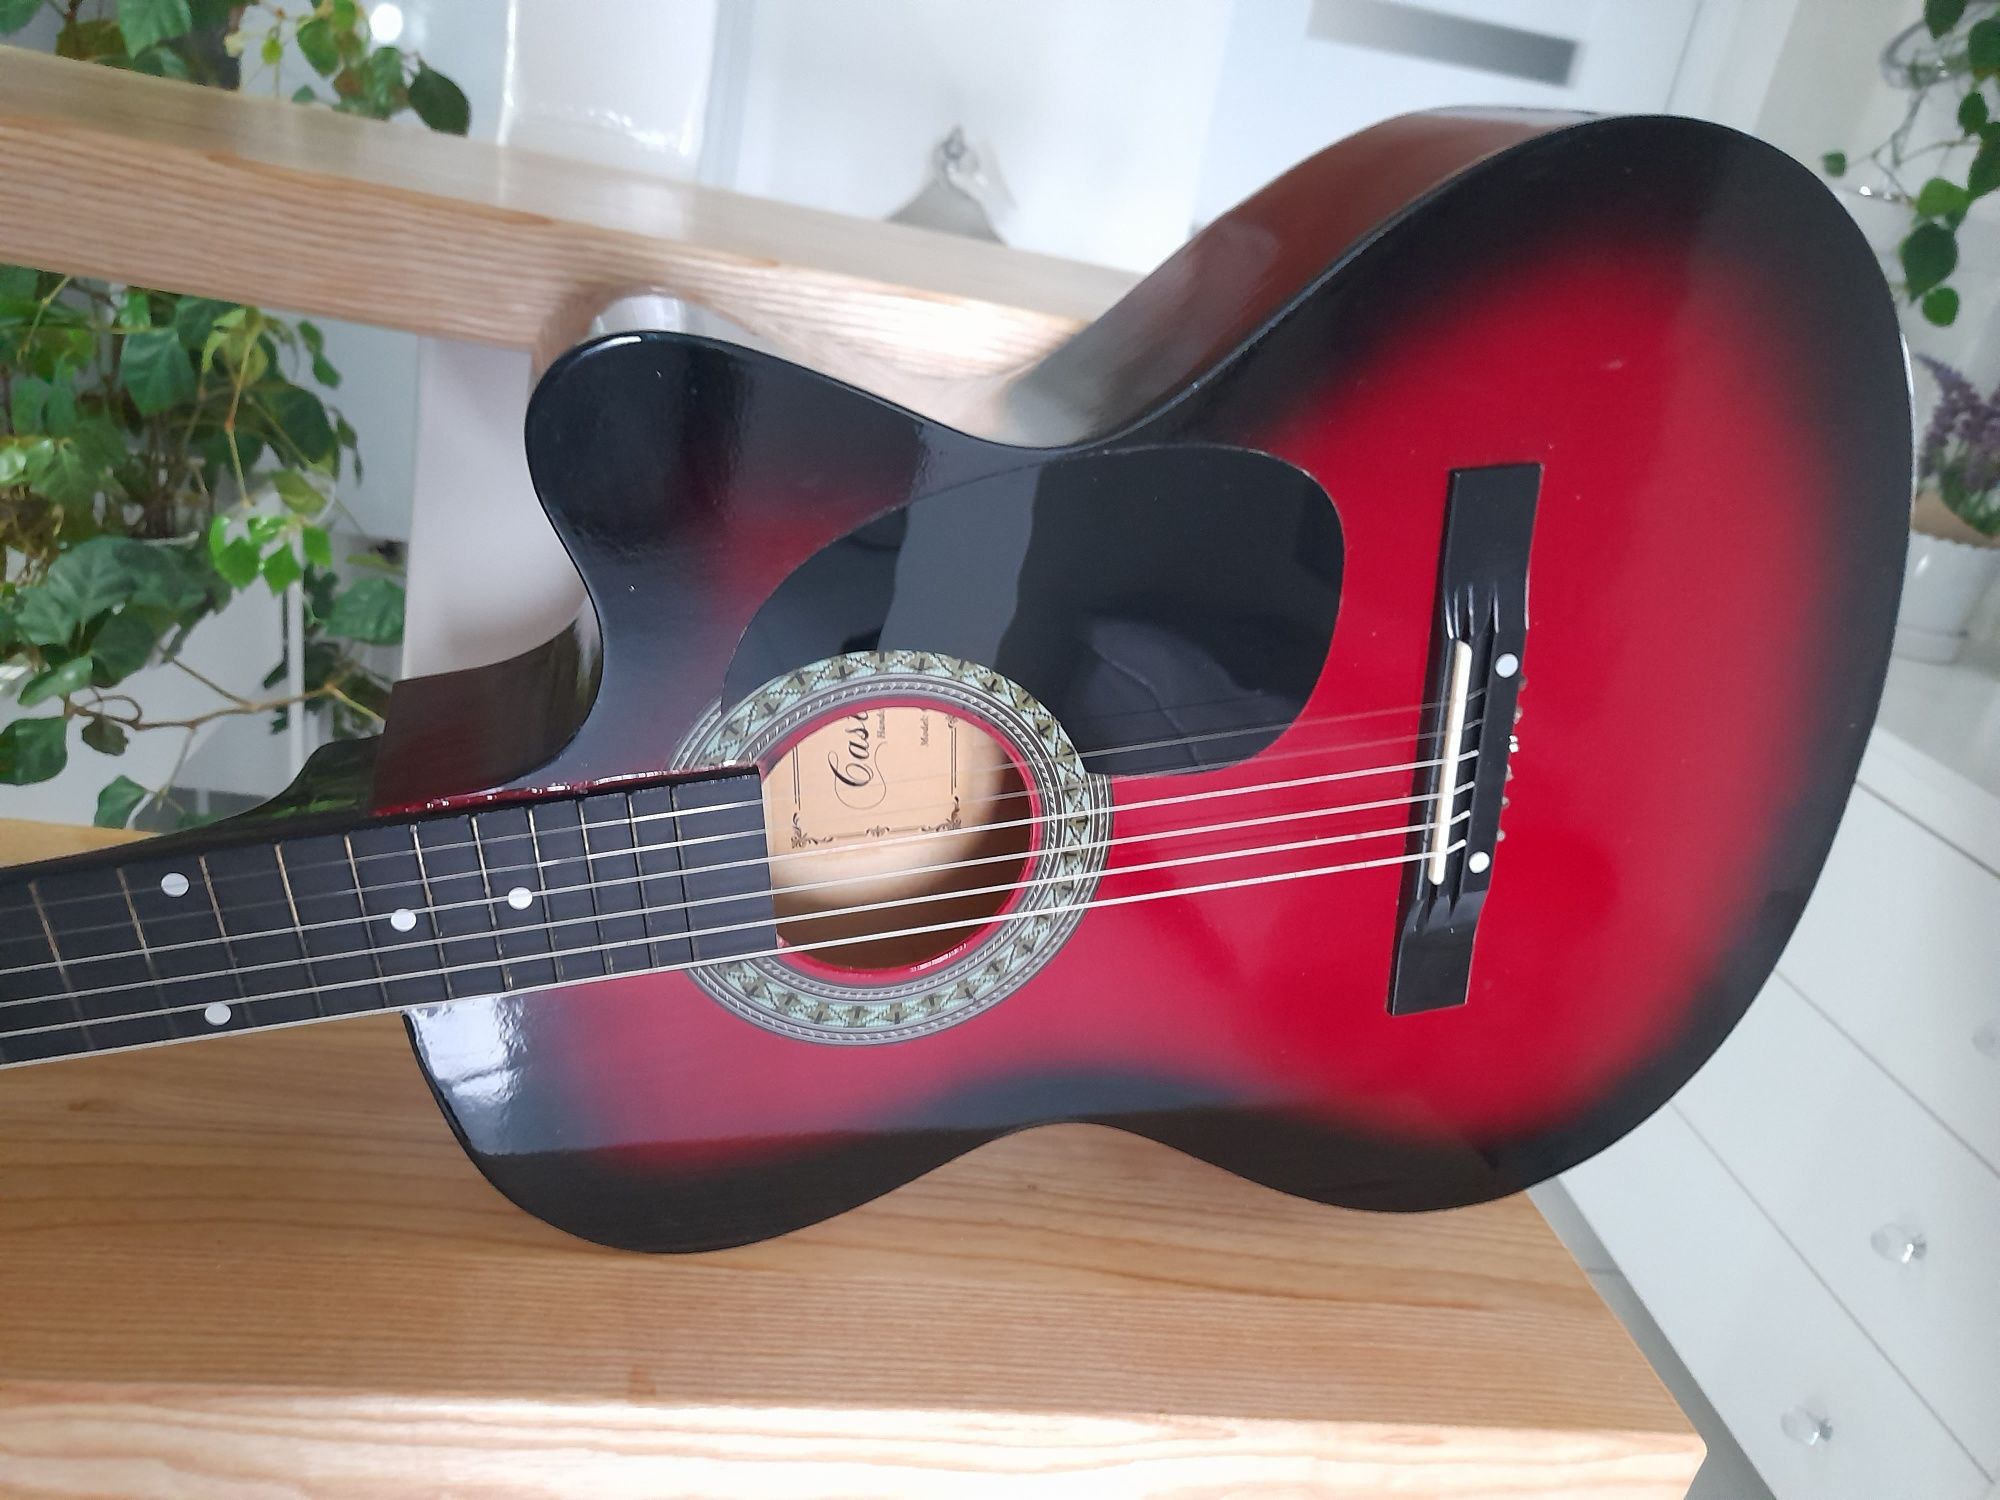 Gitara akustyczna Castelo G3 rozmiar 4/4 czerwona połysk przepiękna